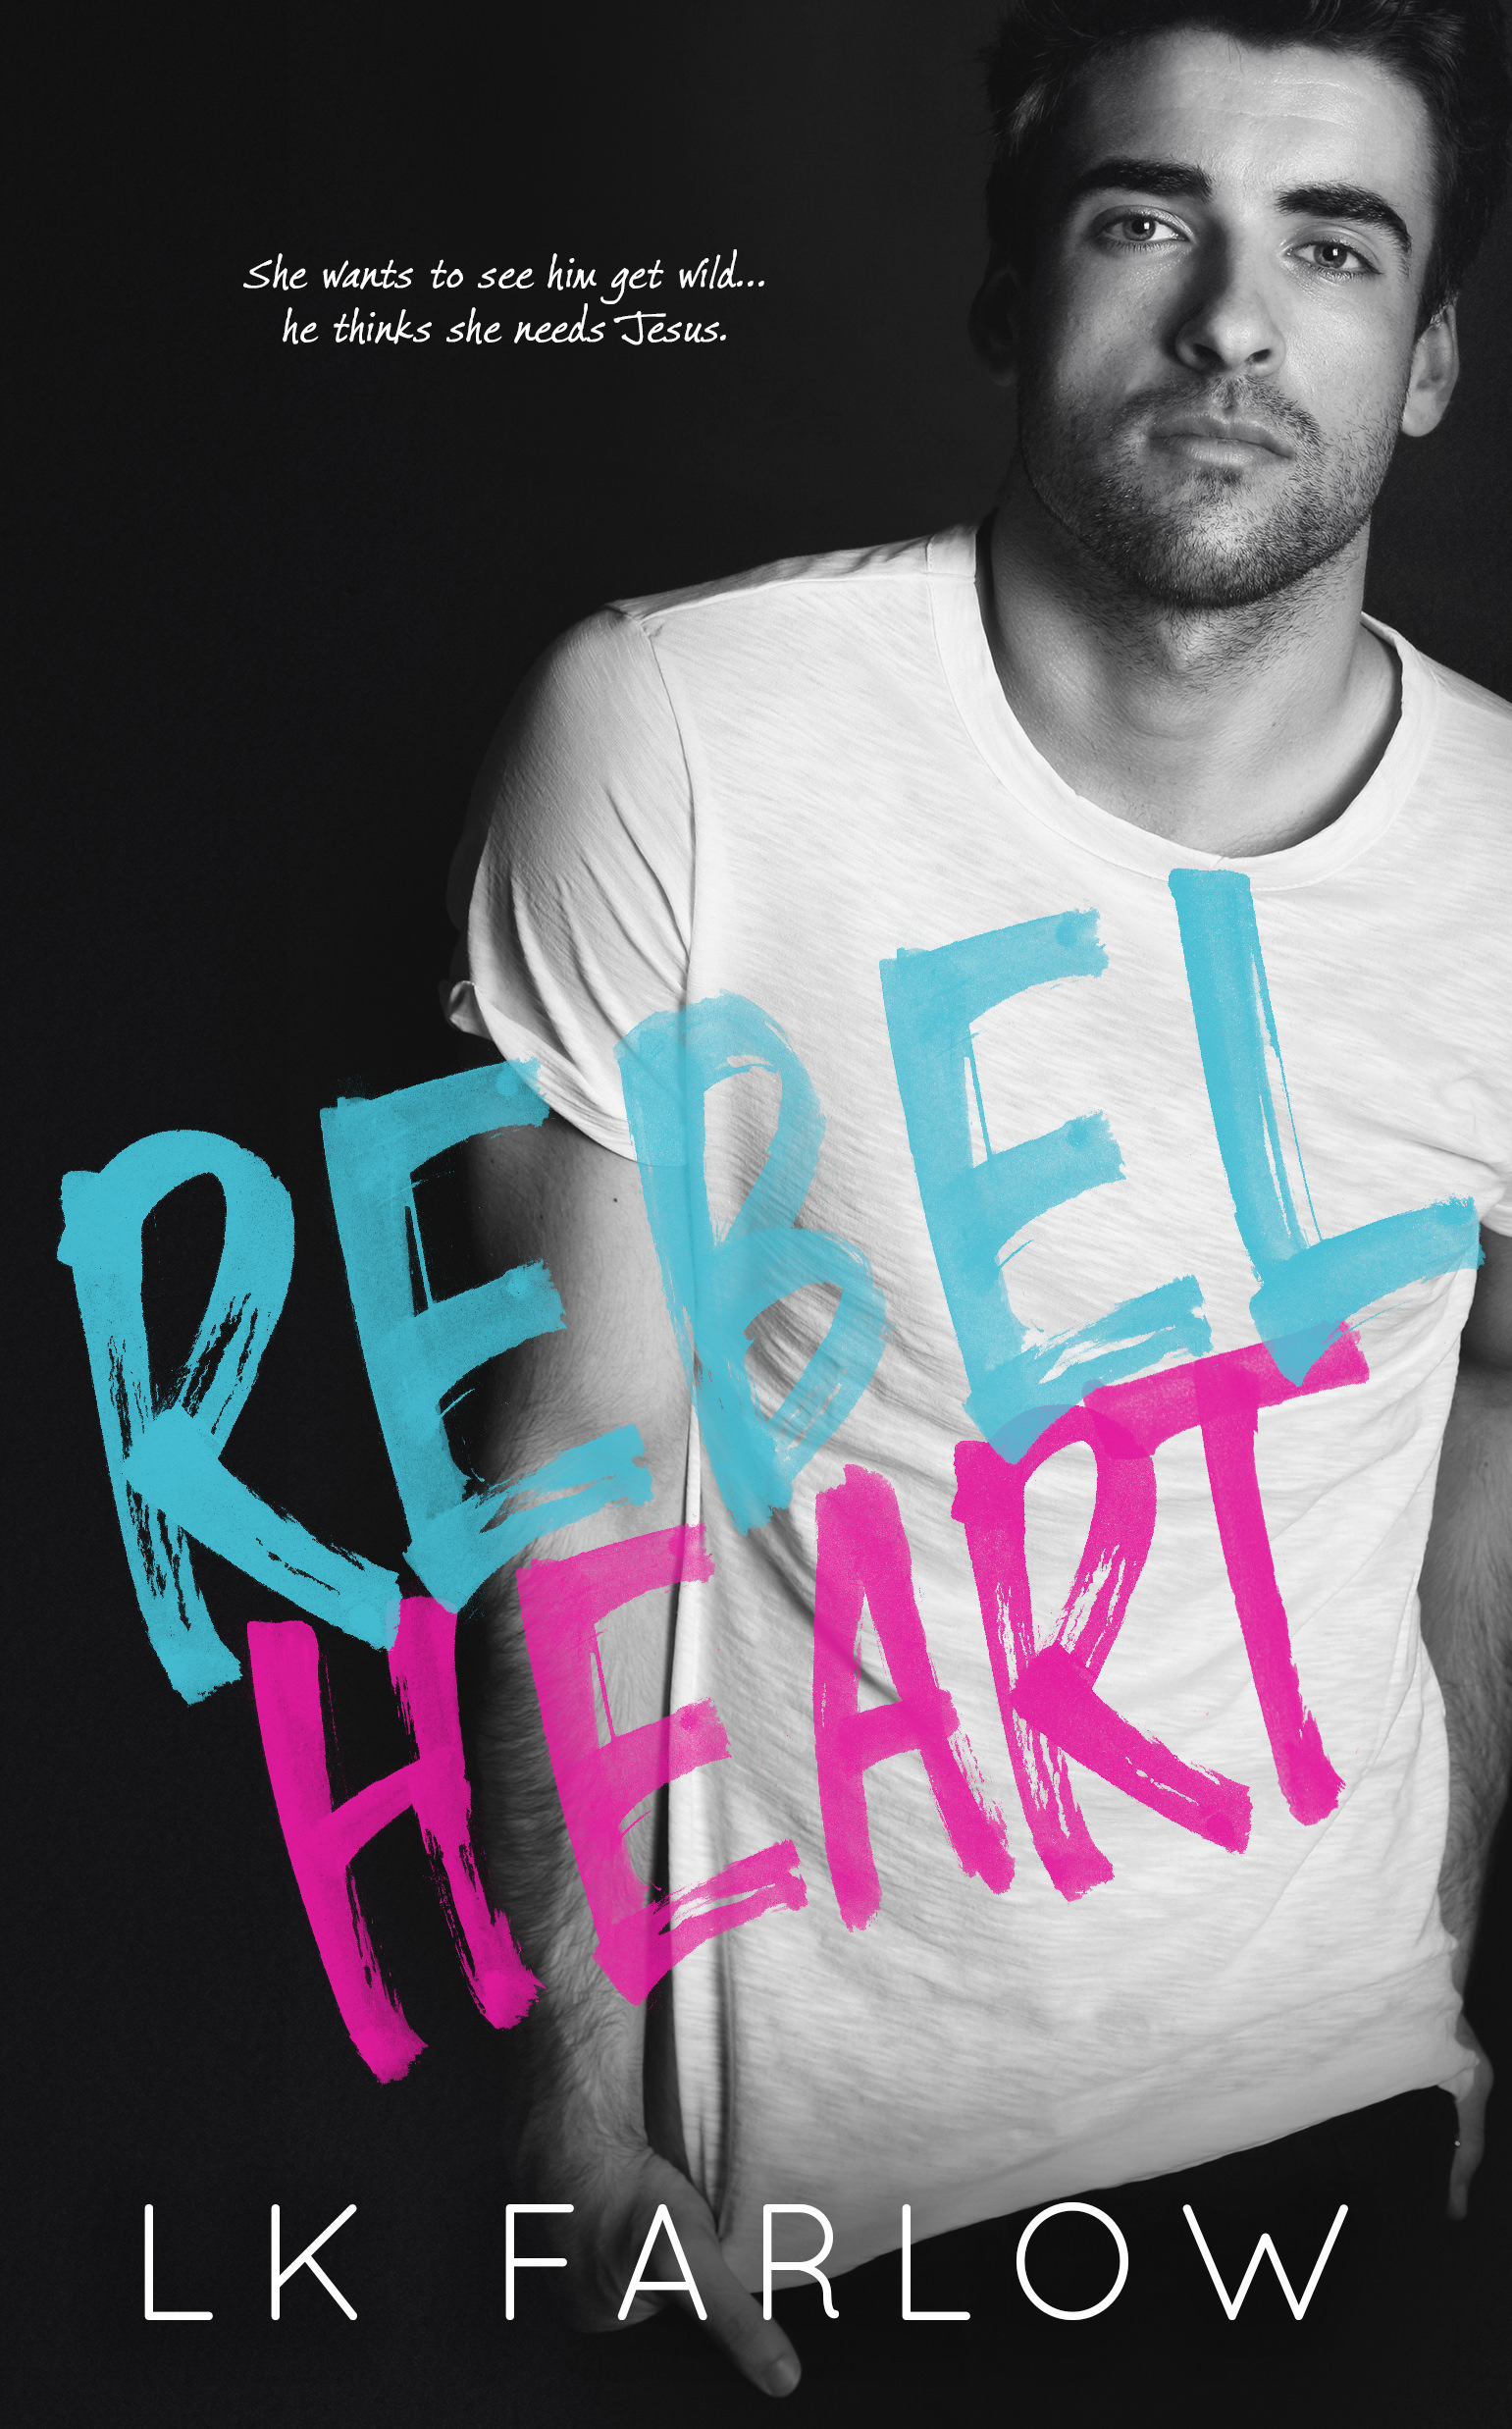 this rebel heart by katherine locke